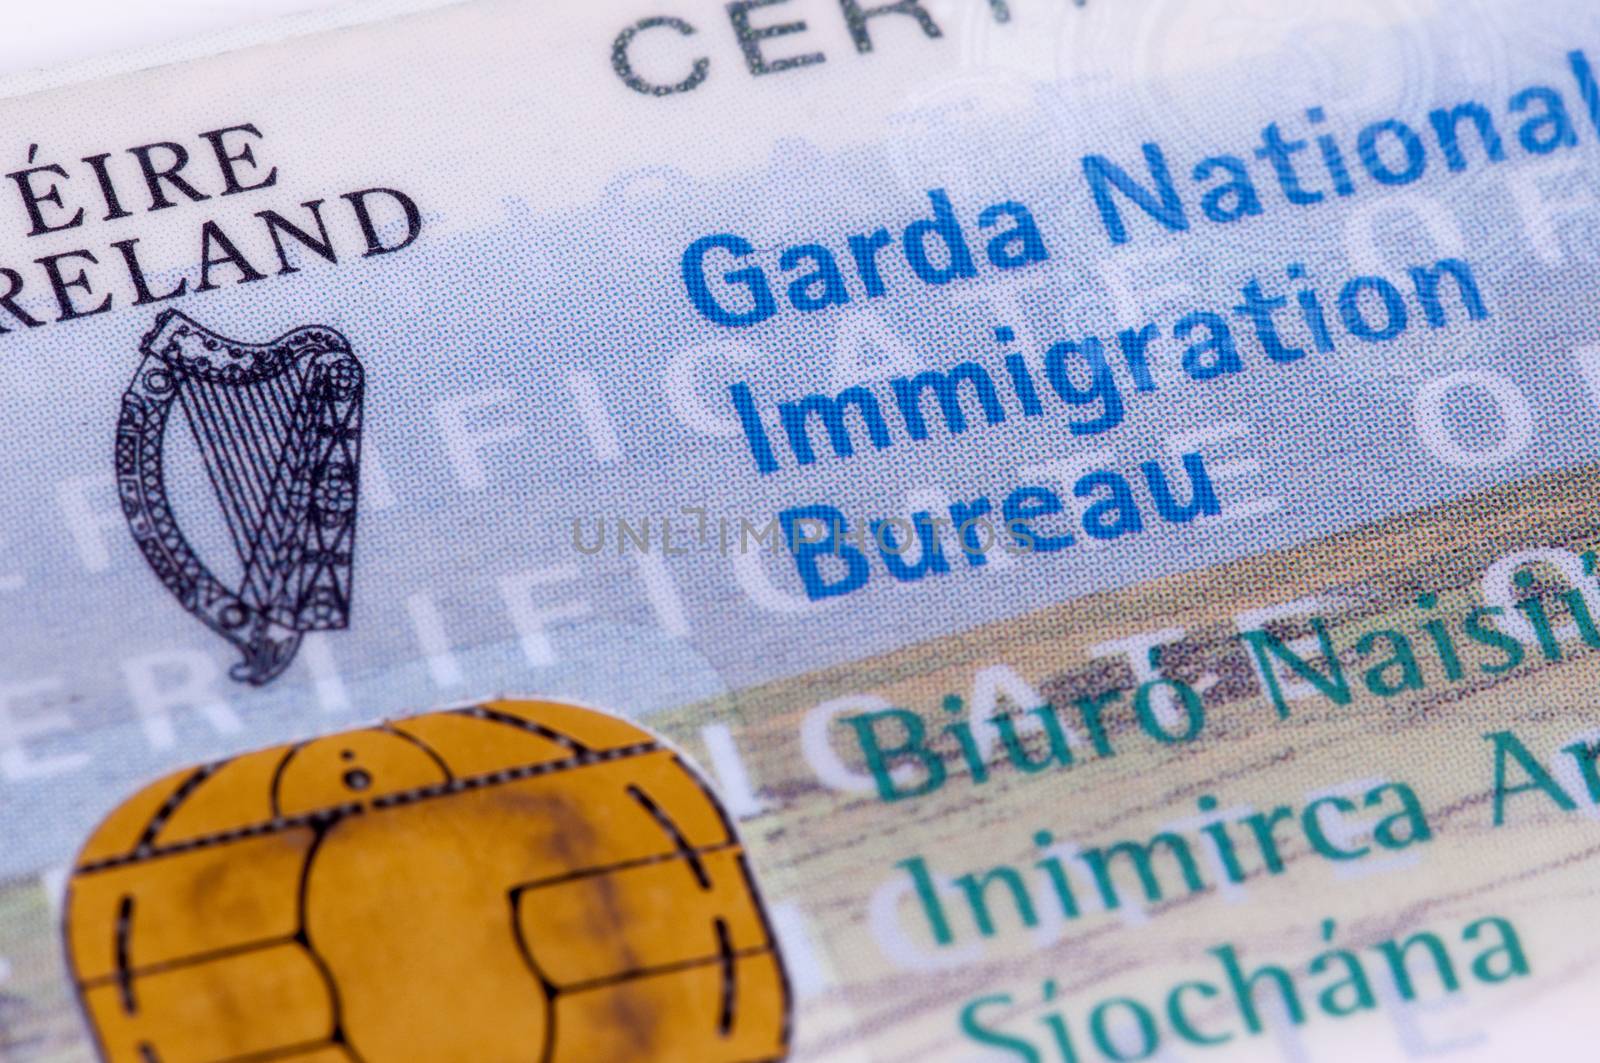 Irish Visa / GNIB by rodrigobellizzi